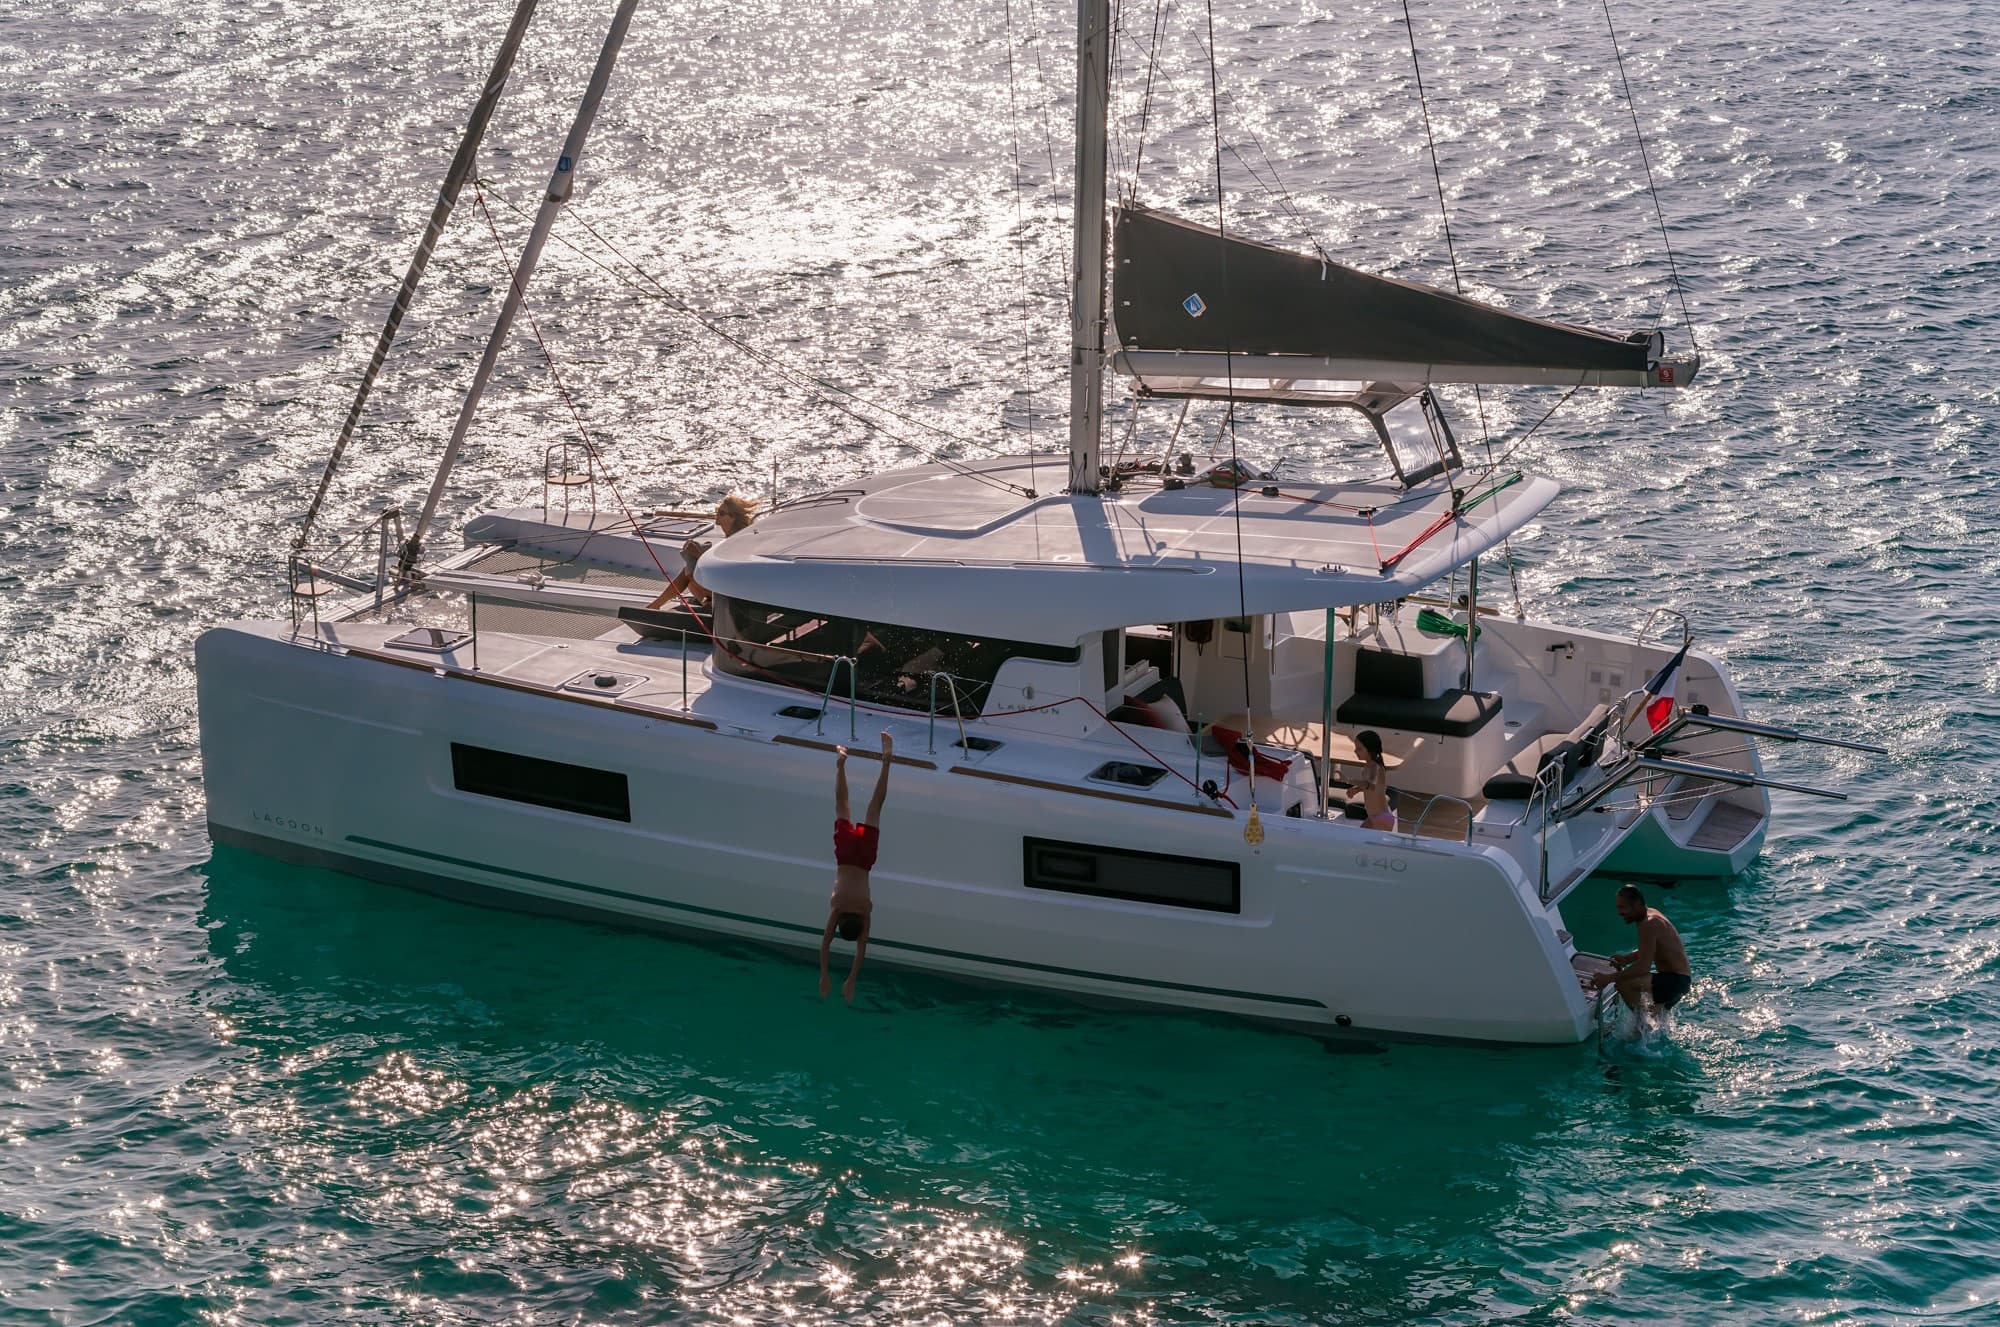 Eine moderne weiße Segelyacht segelt auf glitzerndem türkisfarbenem Wasser, während ein paar Leute sich entspannen und die Sonne genießen. Das Segel ist teilweise entfaltet, was eine sanfte Bewegung suggeriert.